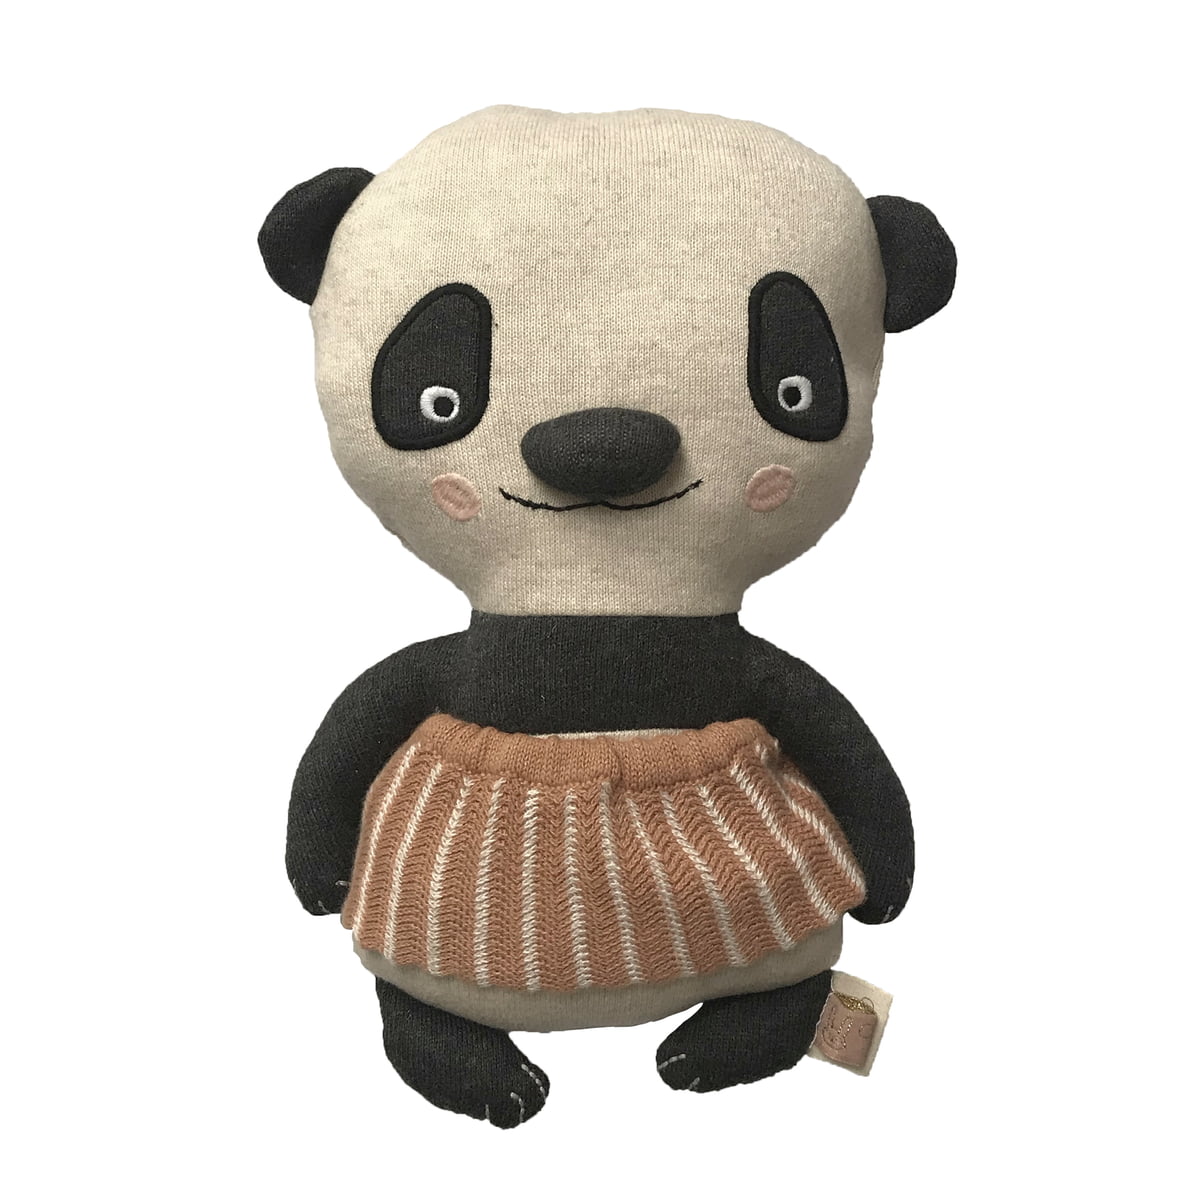 cuddly toy panda